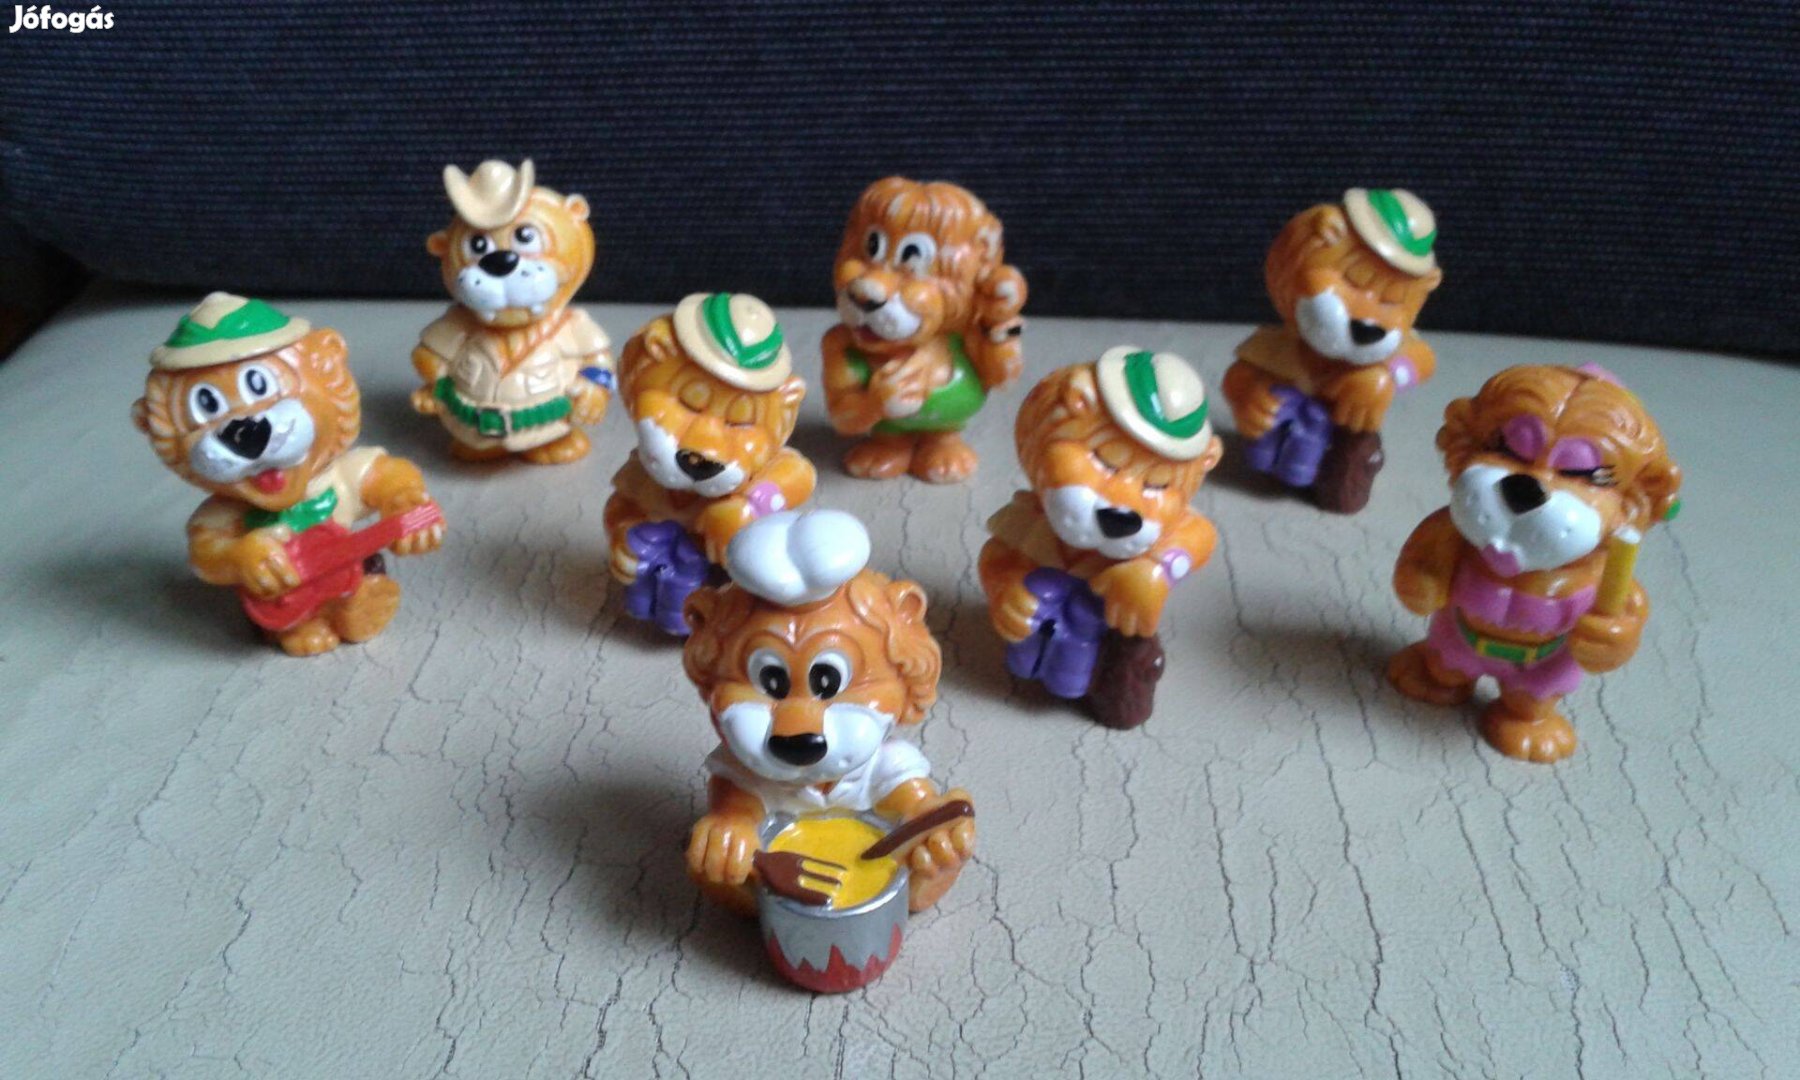 Kinder oroszlán csapat, Kinder figura gyűjtemény Leoventuras